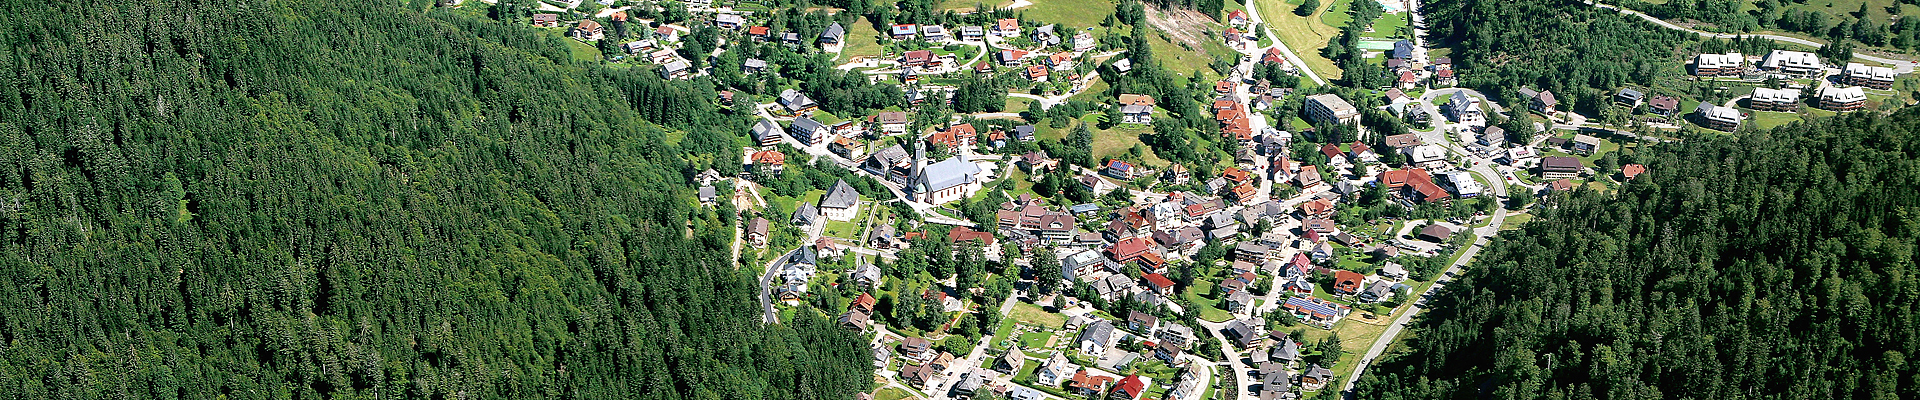 Grundschule Todtmoos im Südschwarzwald